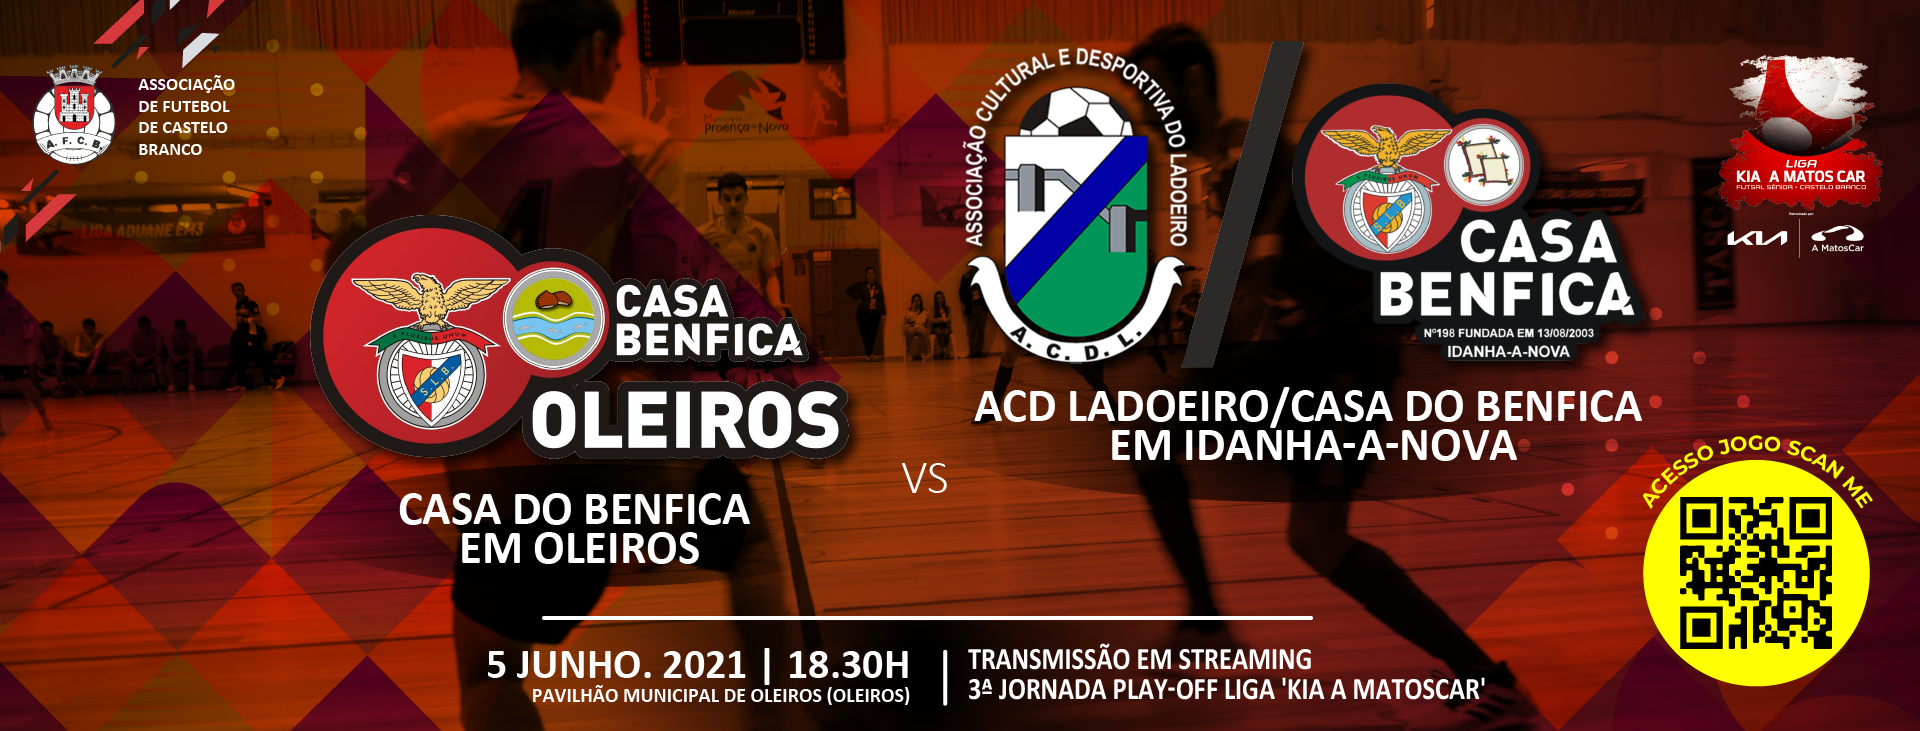 Casa Benfica Oleiros e ACD Ladoeiro/Casa Benfica Idanha-a-Nova jogam sábado a “final” da Liga KIA A MatosCar